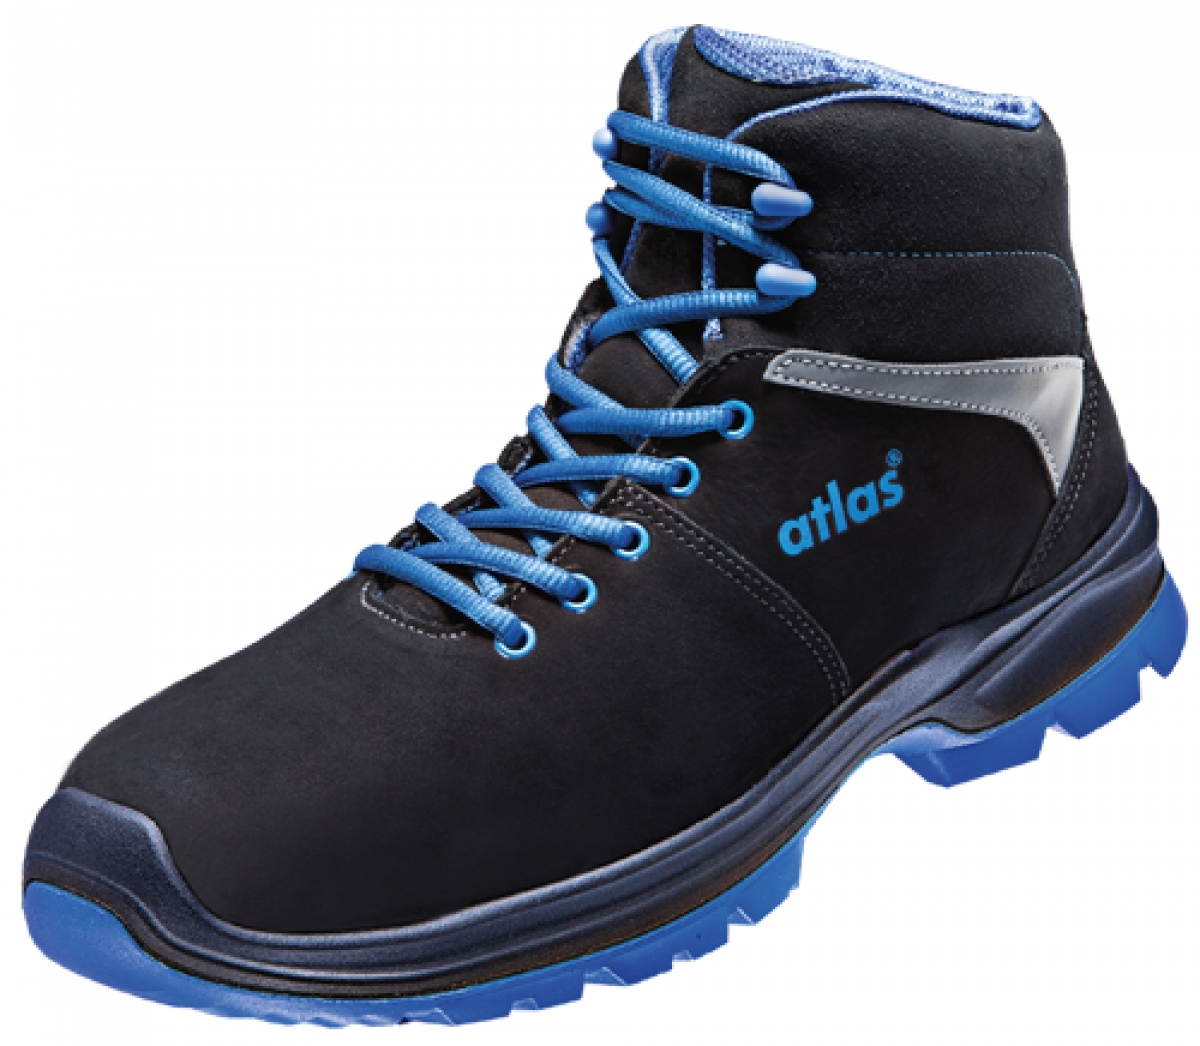 ATLAS-S3-Sicherheitsschuhe, ERGO-MED 805 XP, ESD, Weite 14, schwarz/blau